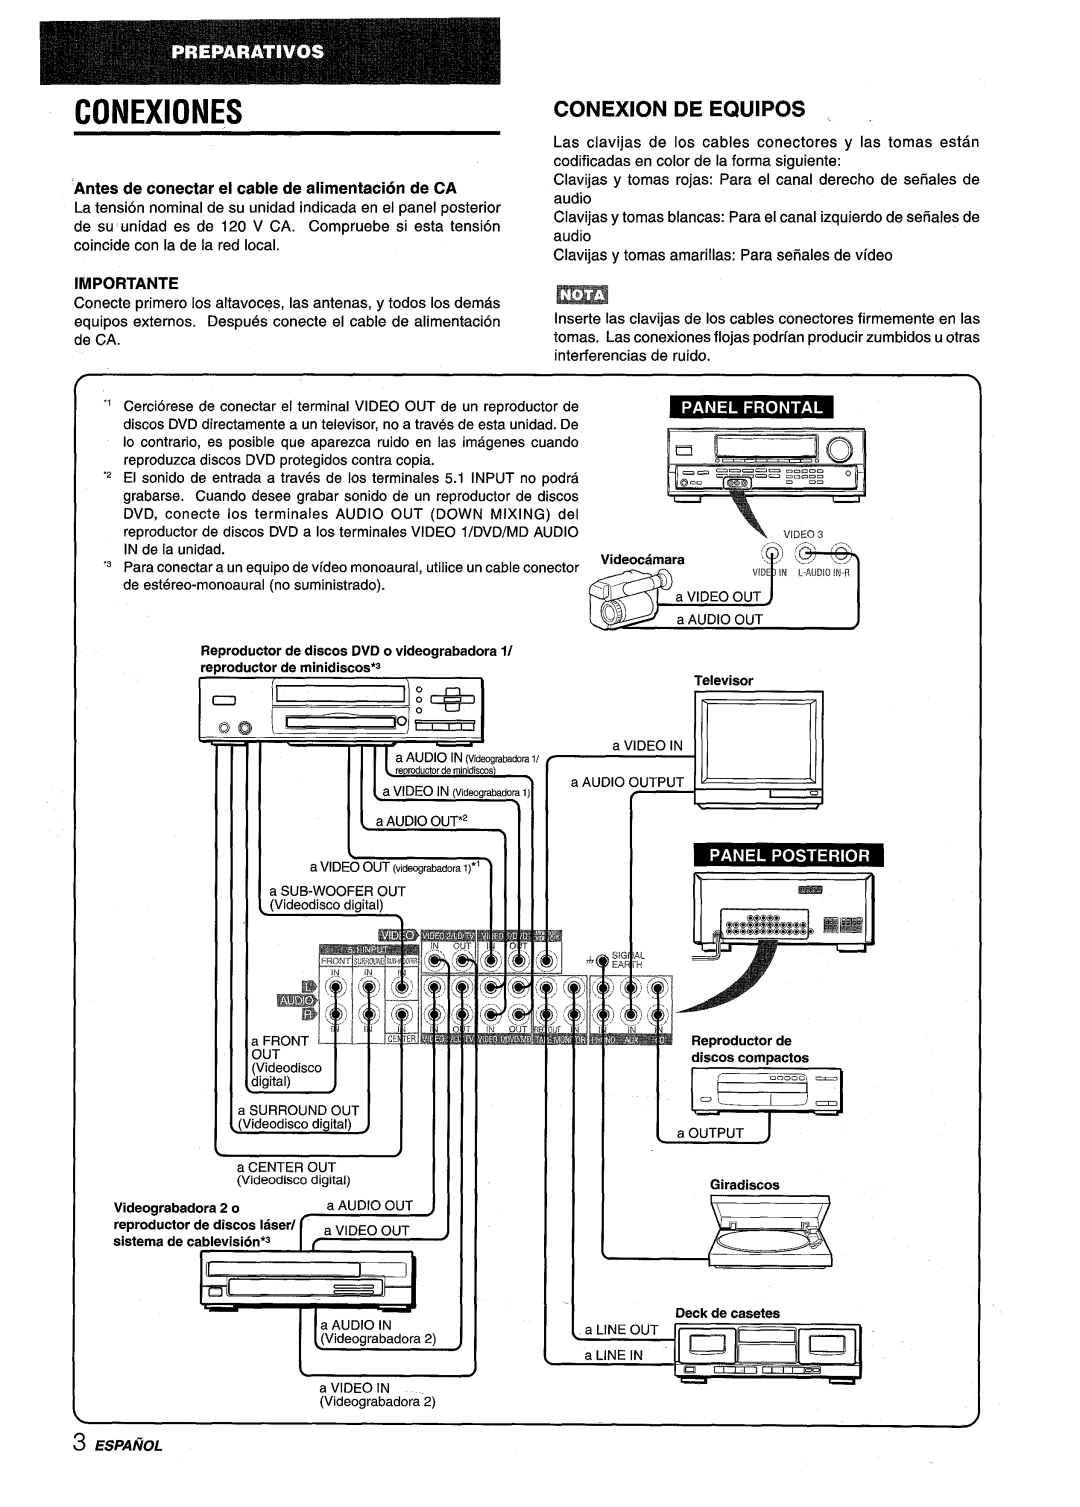 Aiwa AV-D25 manual Conexiones, Conexion De Equipos, Antes de conectar el cable de alimentacion de CA, Importante, 1111 